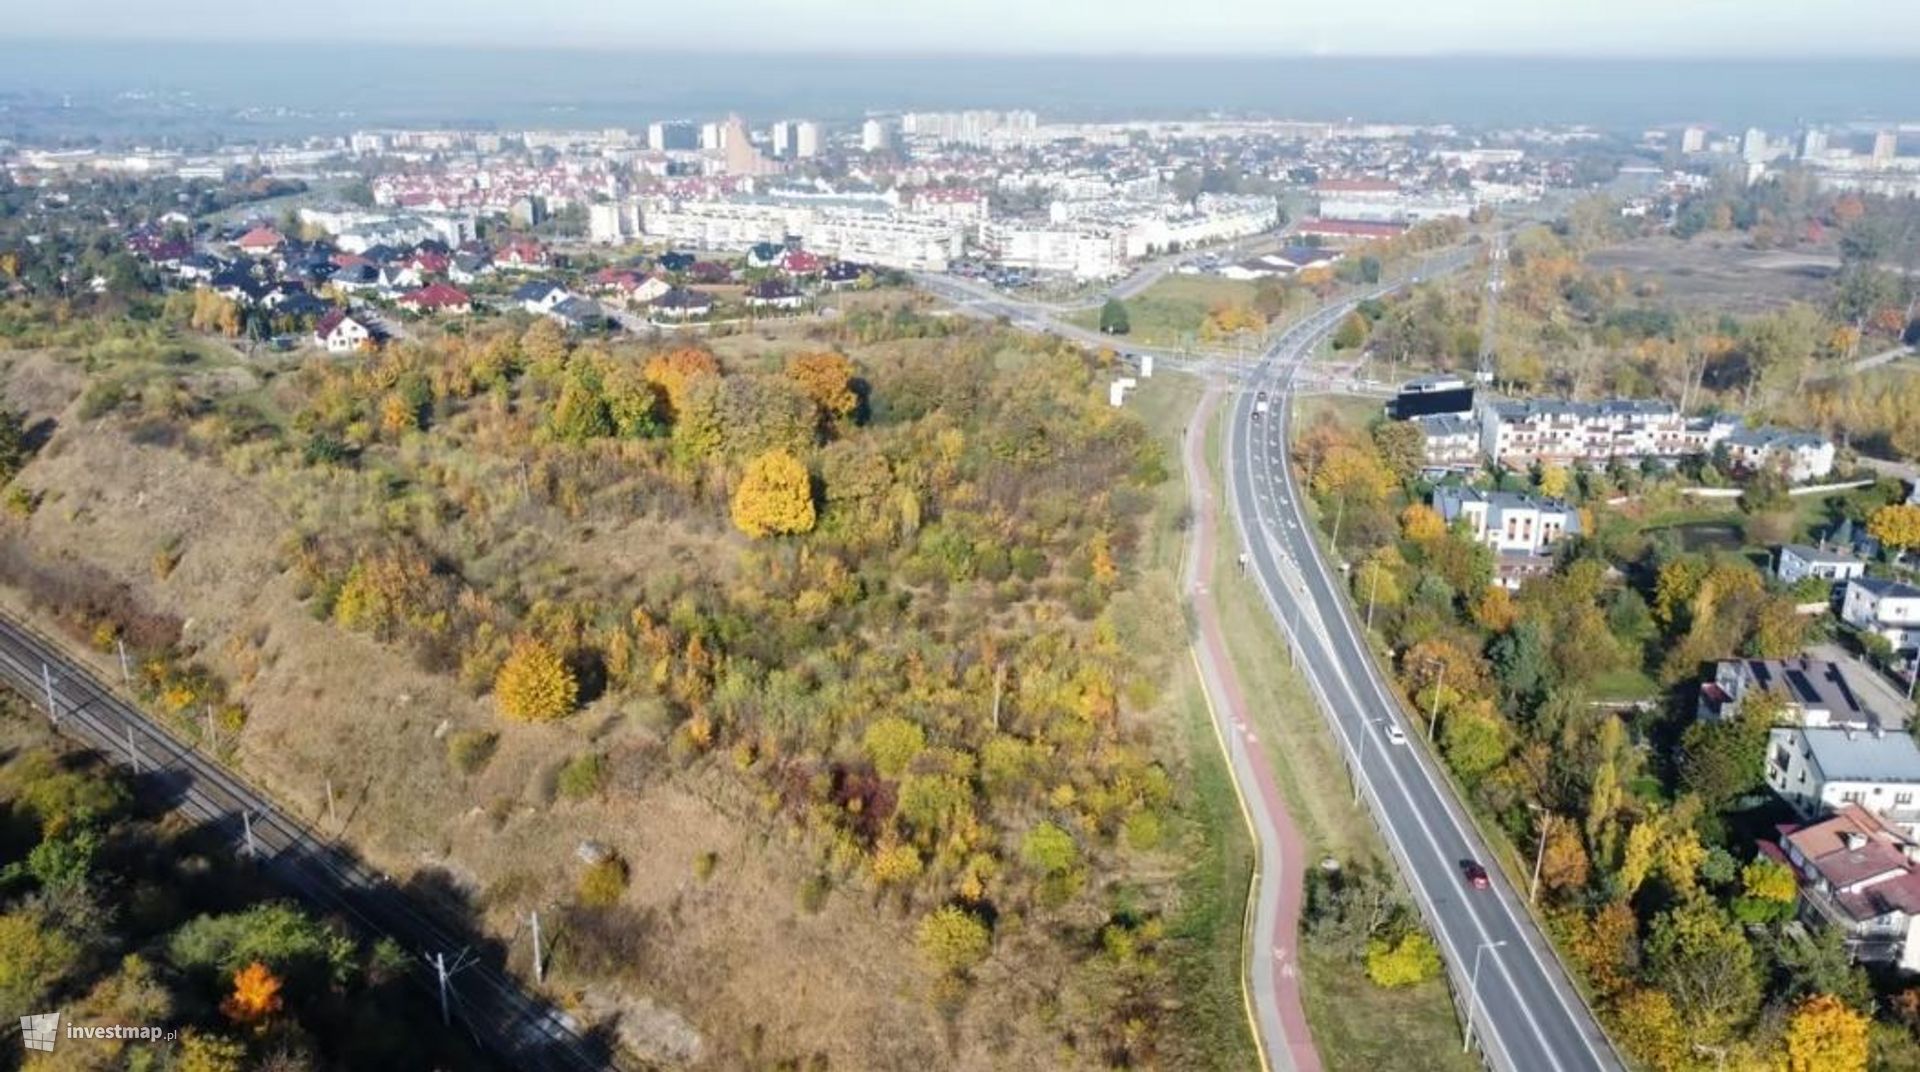 W Tczewie pod Gdańskiem powstanie duży park handlowy